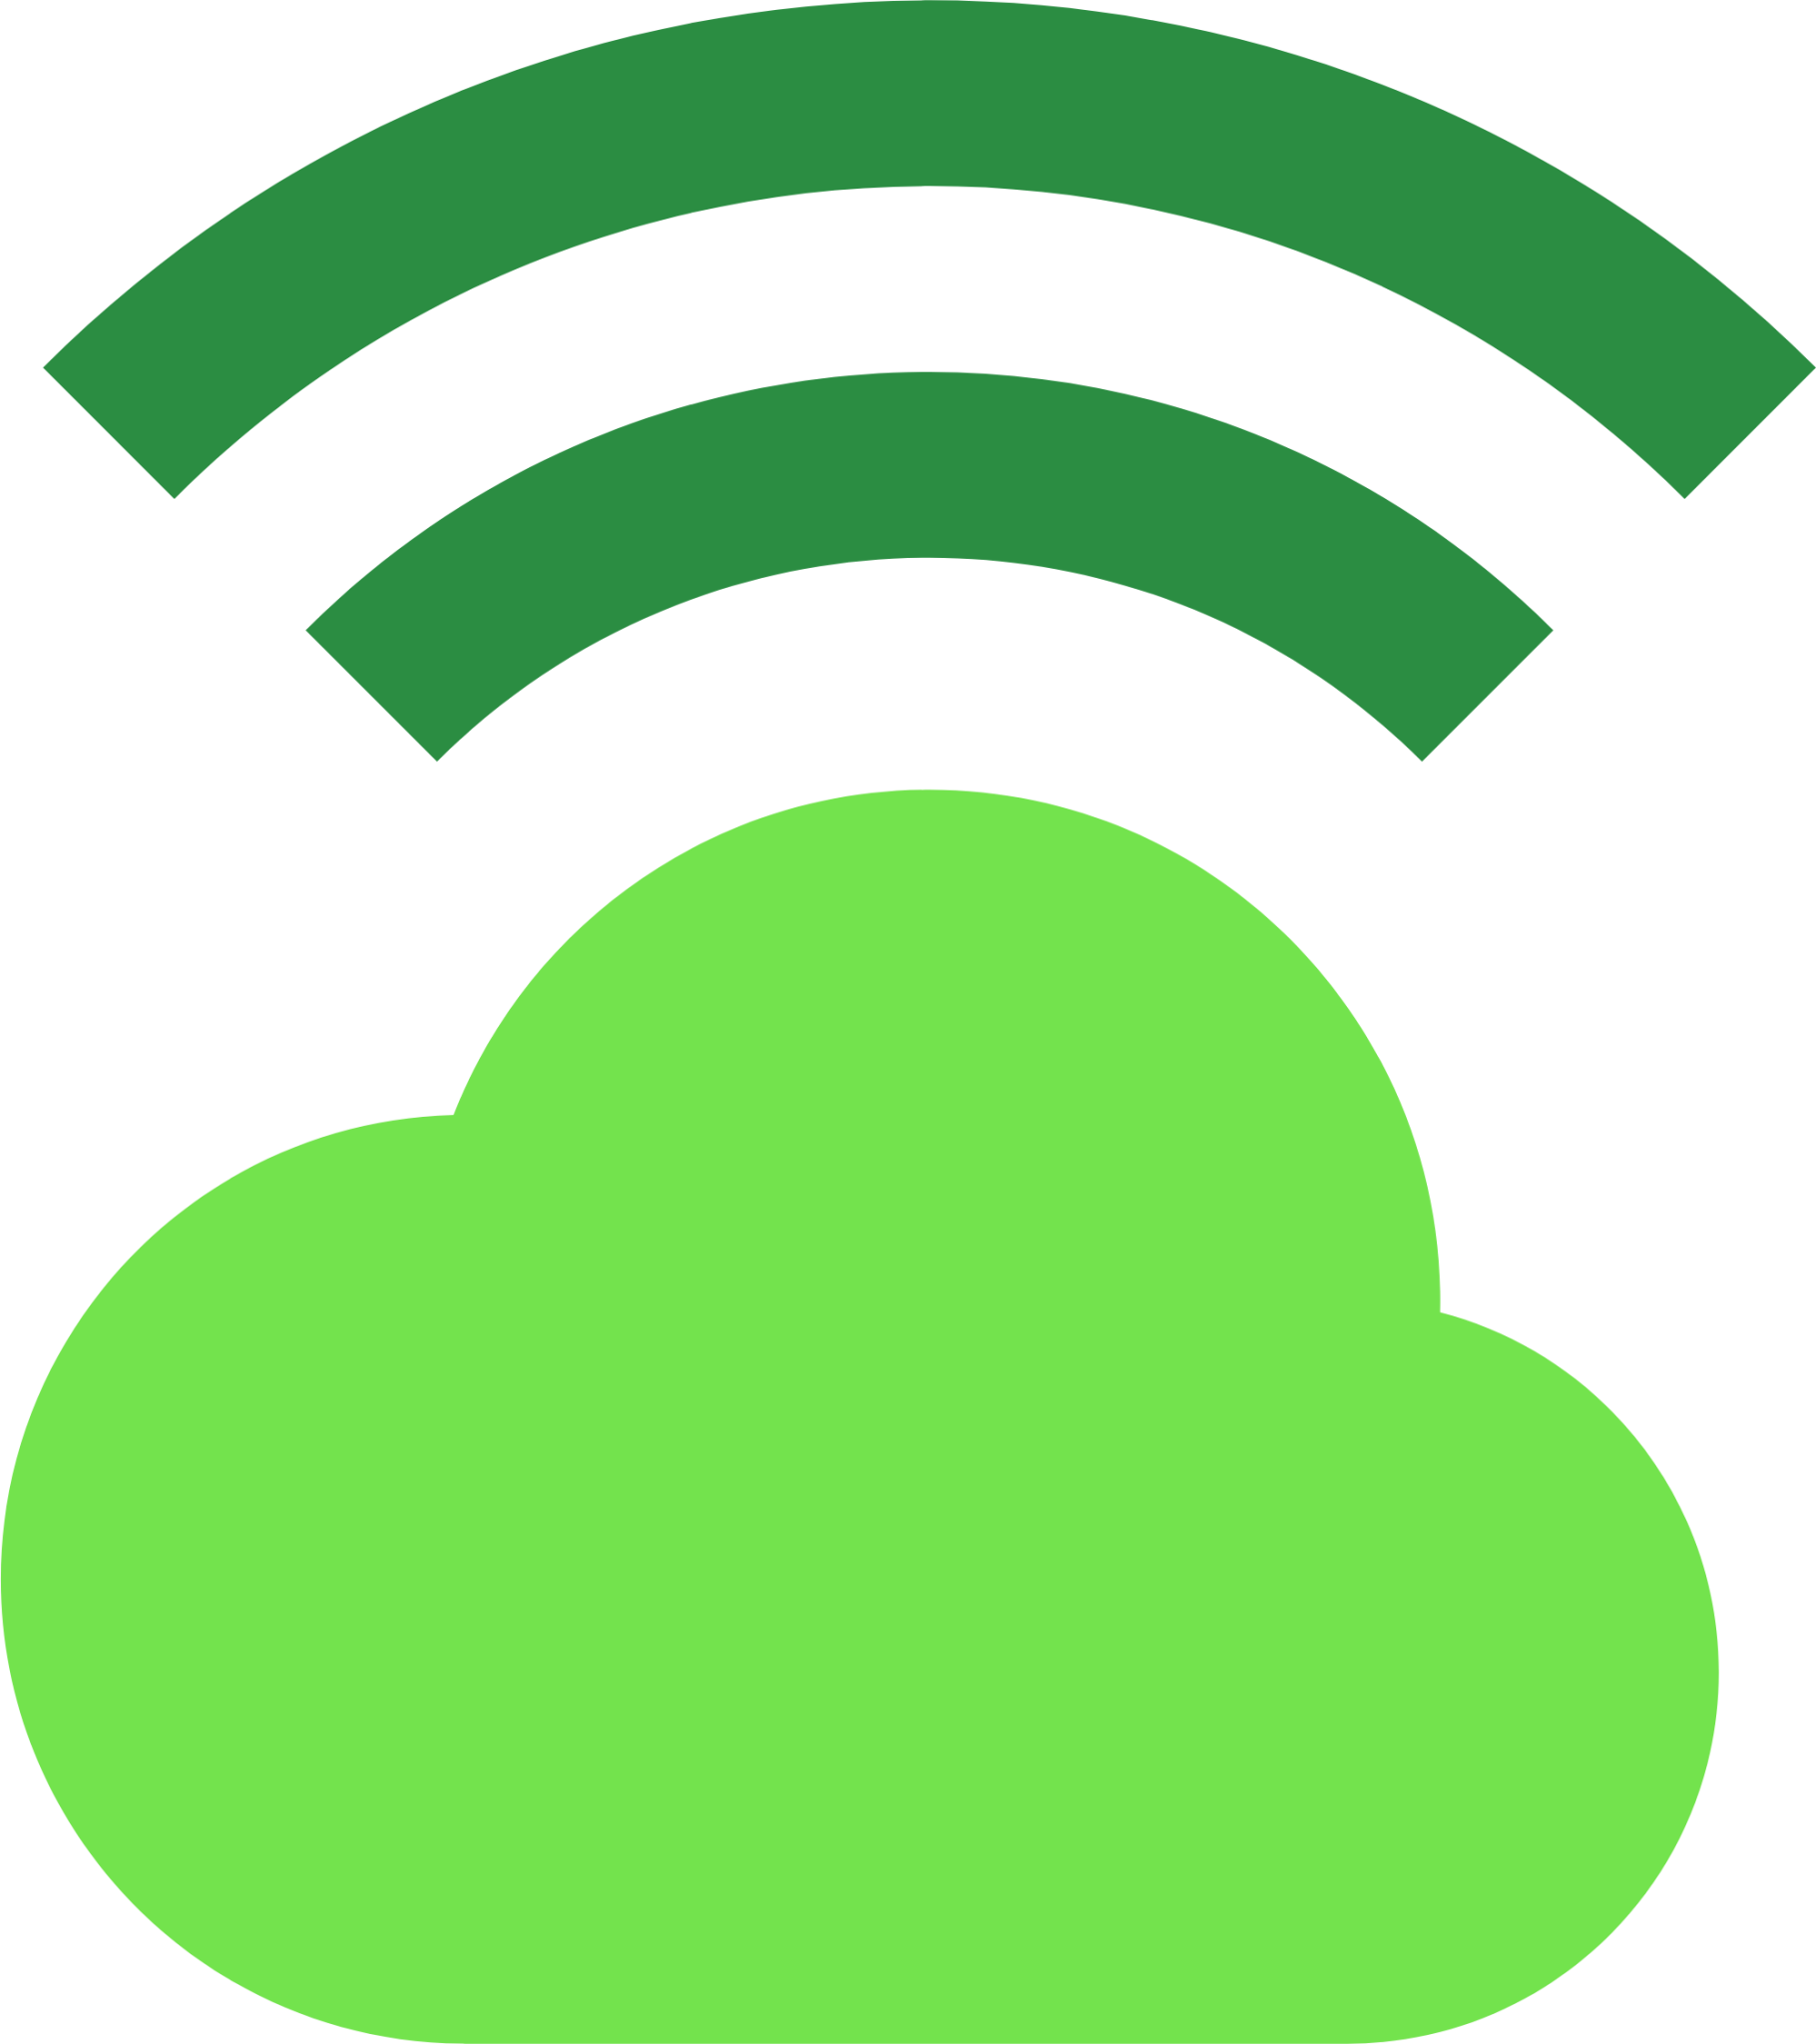 programming cloud wifi icon